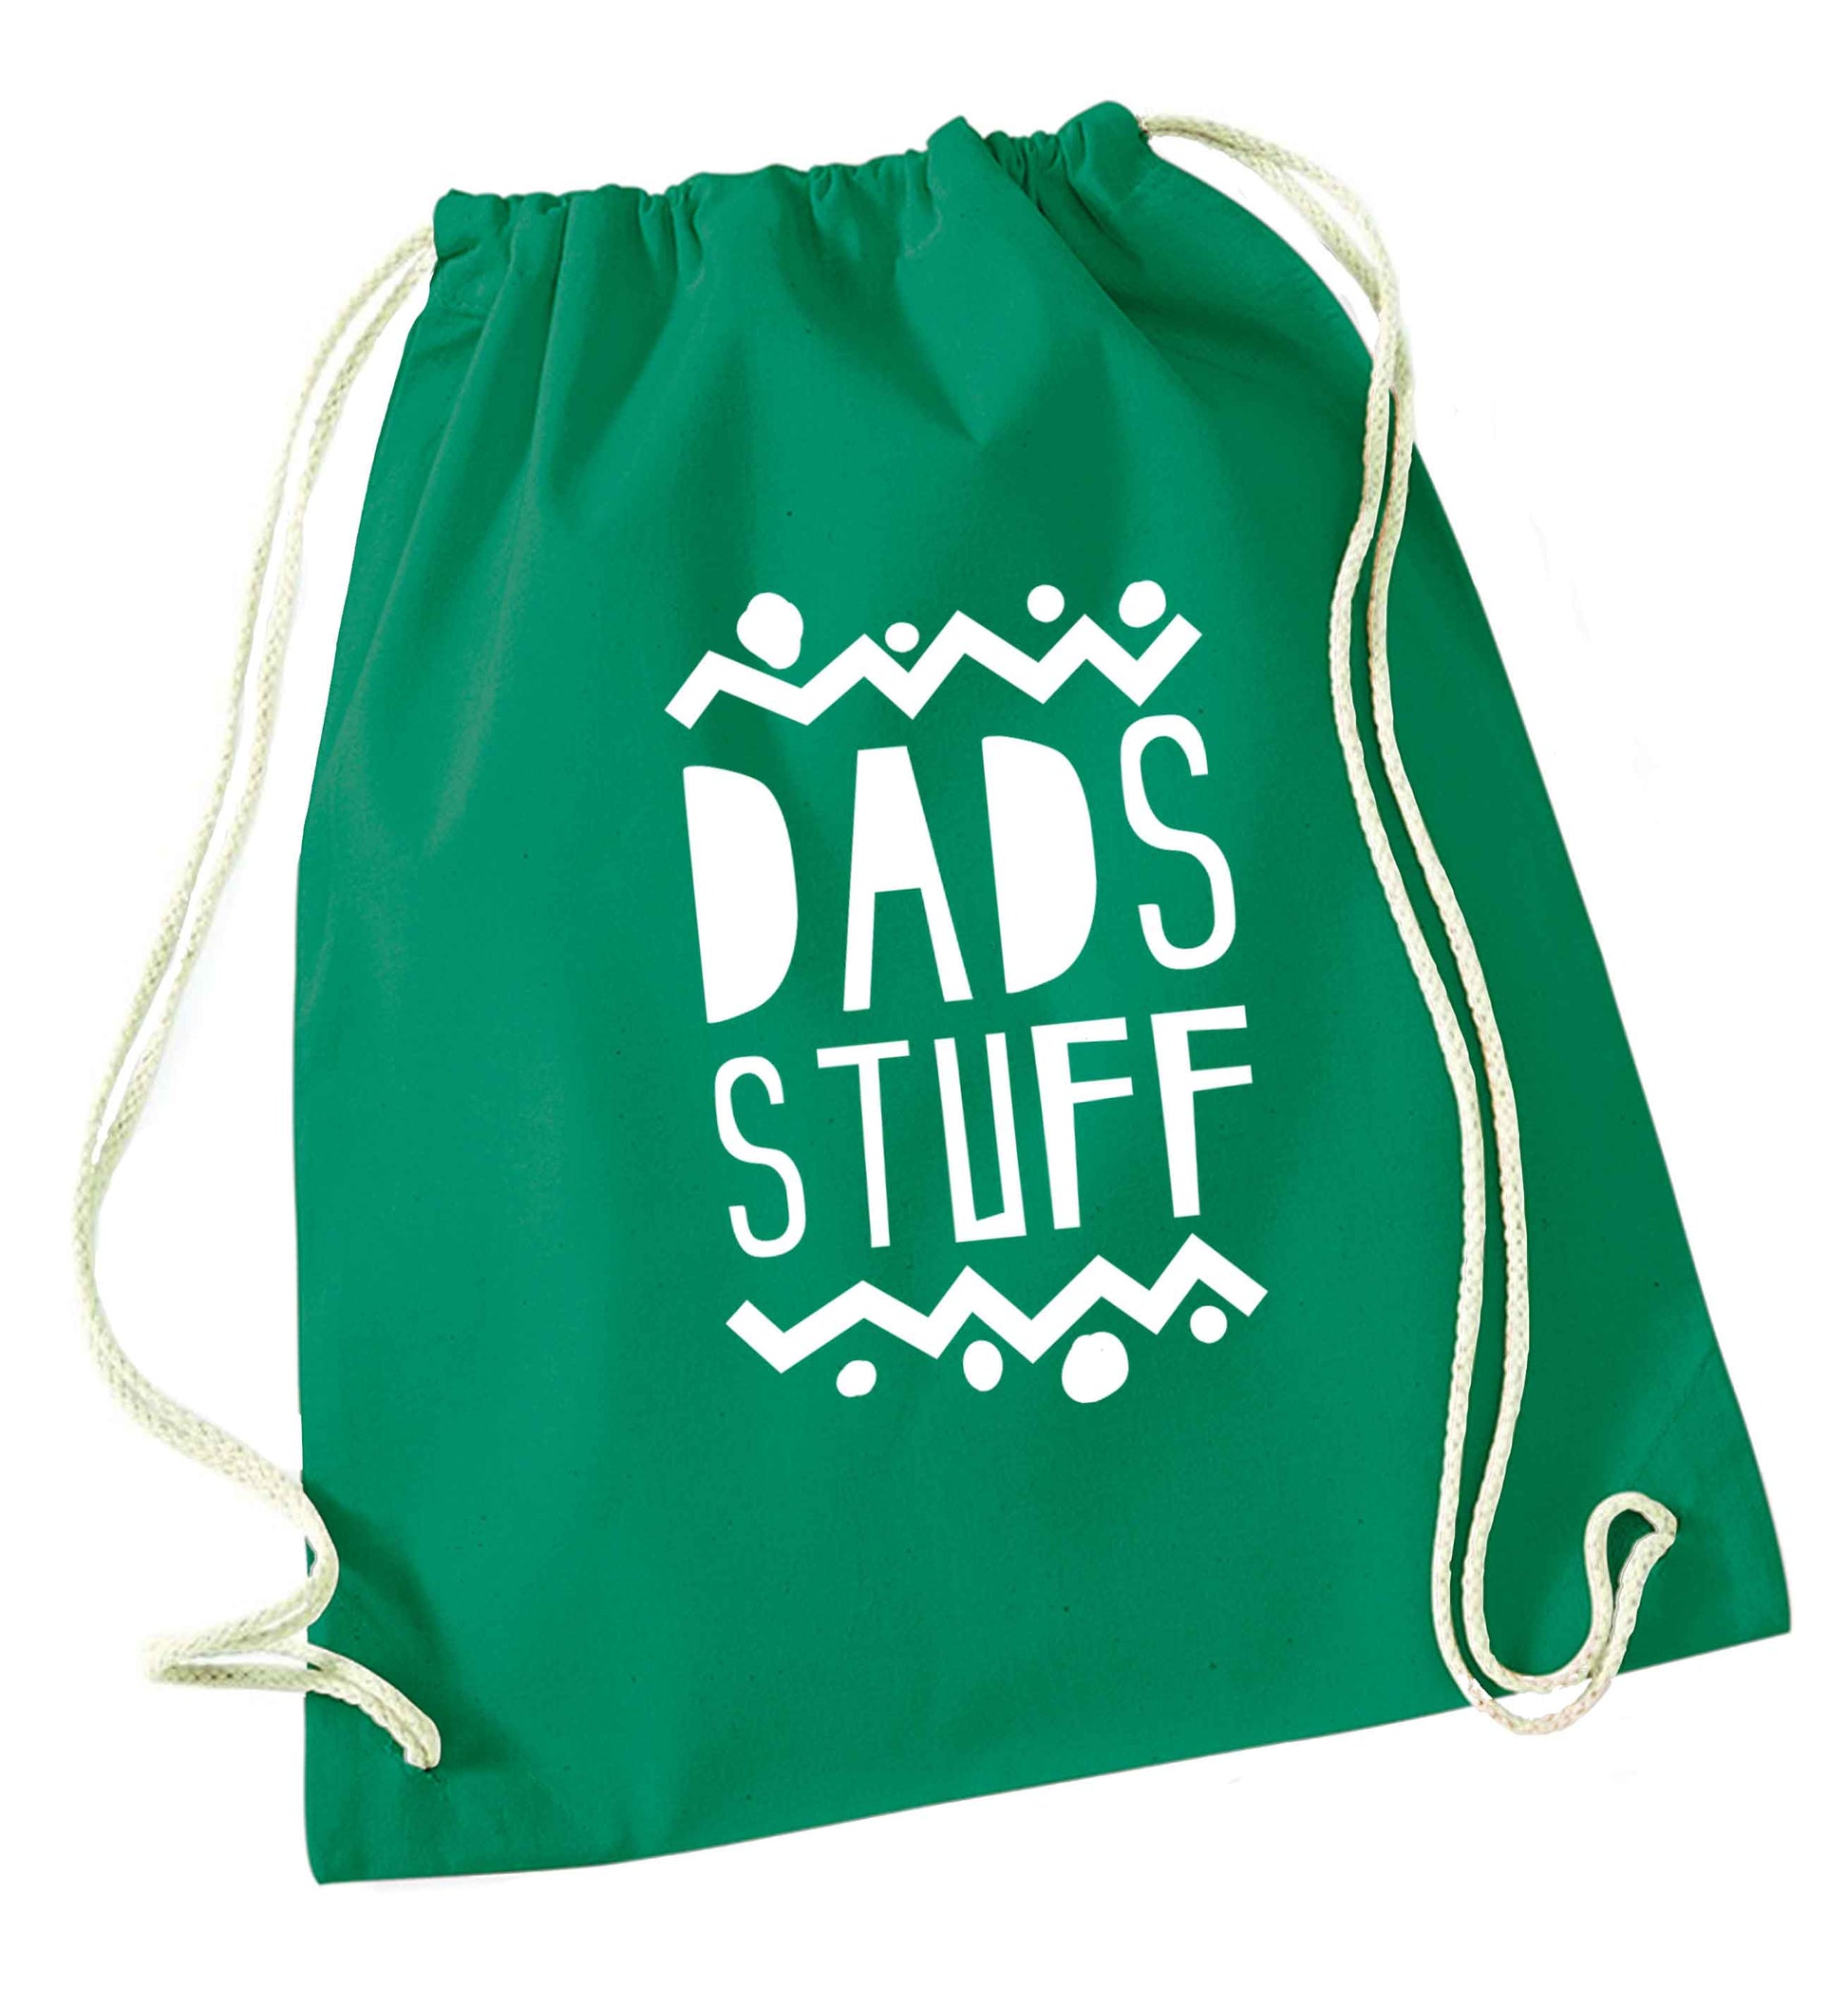 Dads stuff green drawstring bag